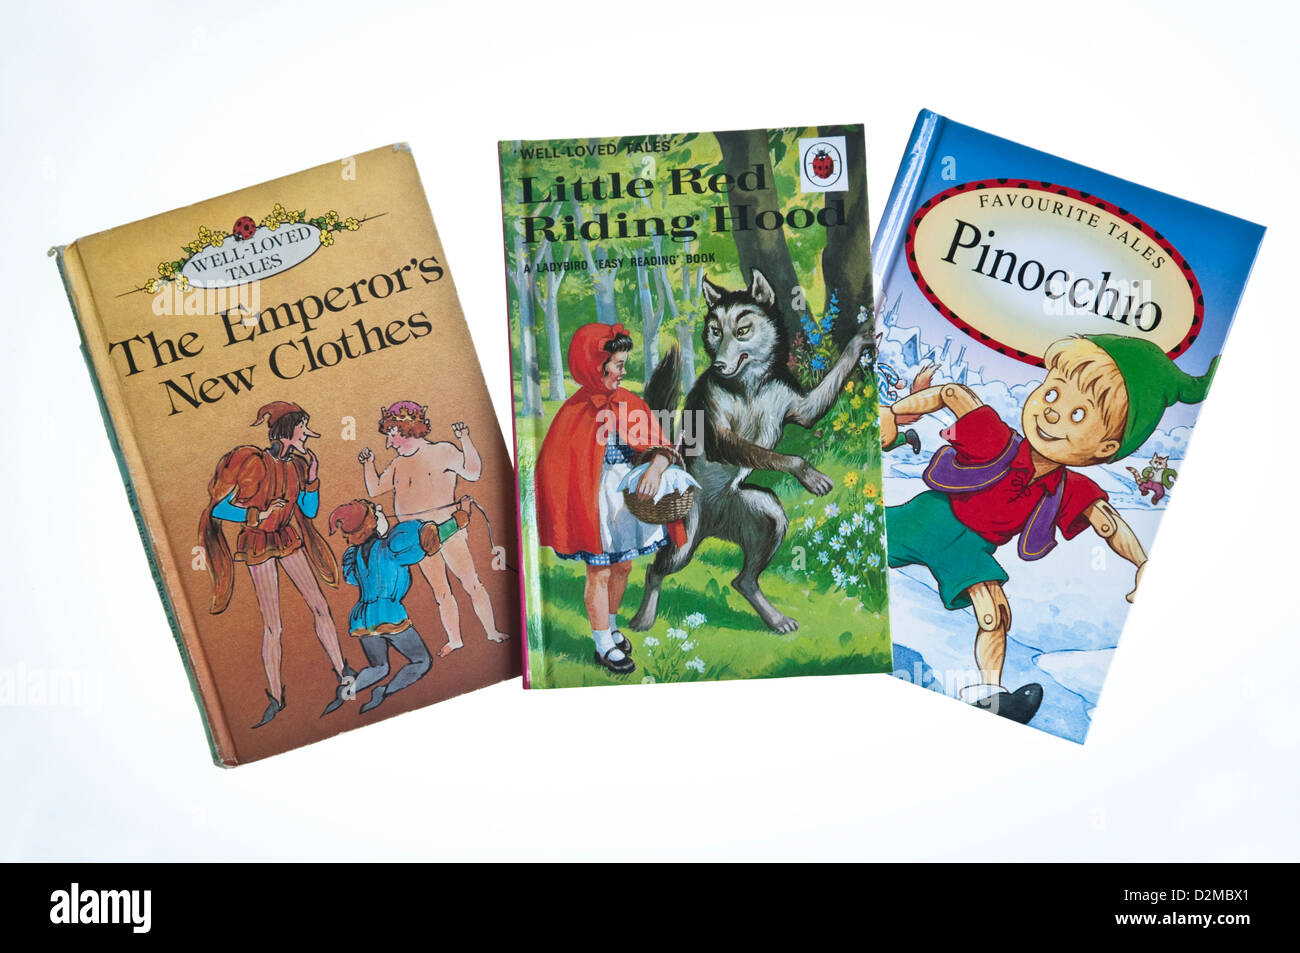 Tre fiaba tradizionale racconti pubblicati da coccinella libri; i vestiti nuovi dell'Imperatore, Little Red Riding Hood & Pinocchio. Foto Stock